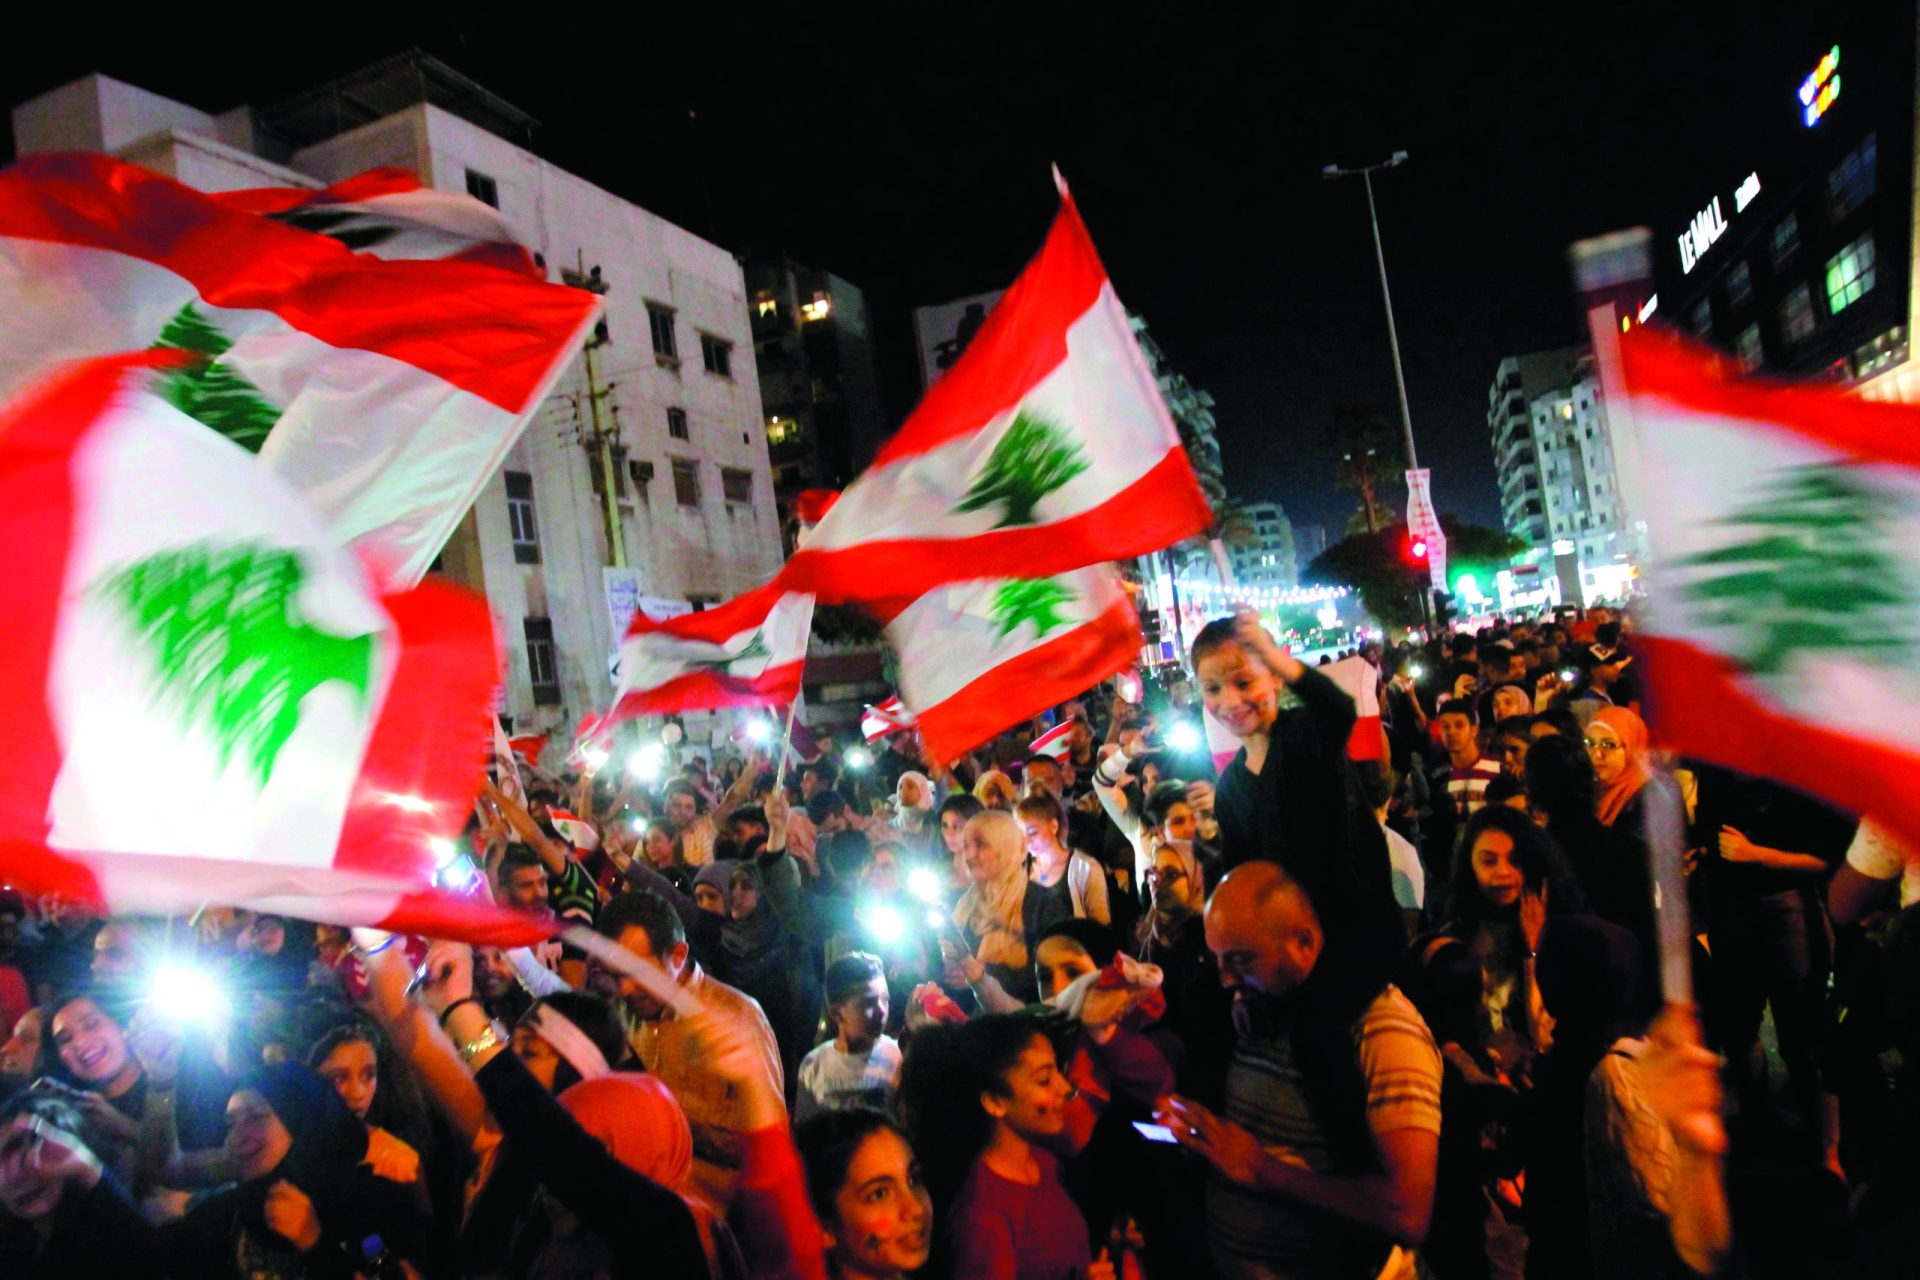 Líbano. Manifestantes reinvindicam para si a “Paris do Médio Oriente”